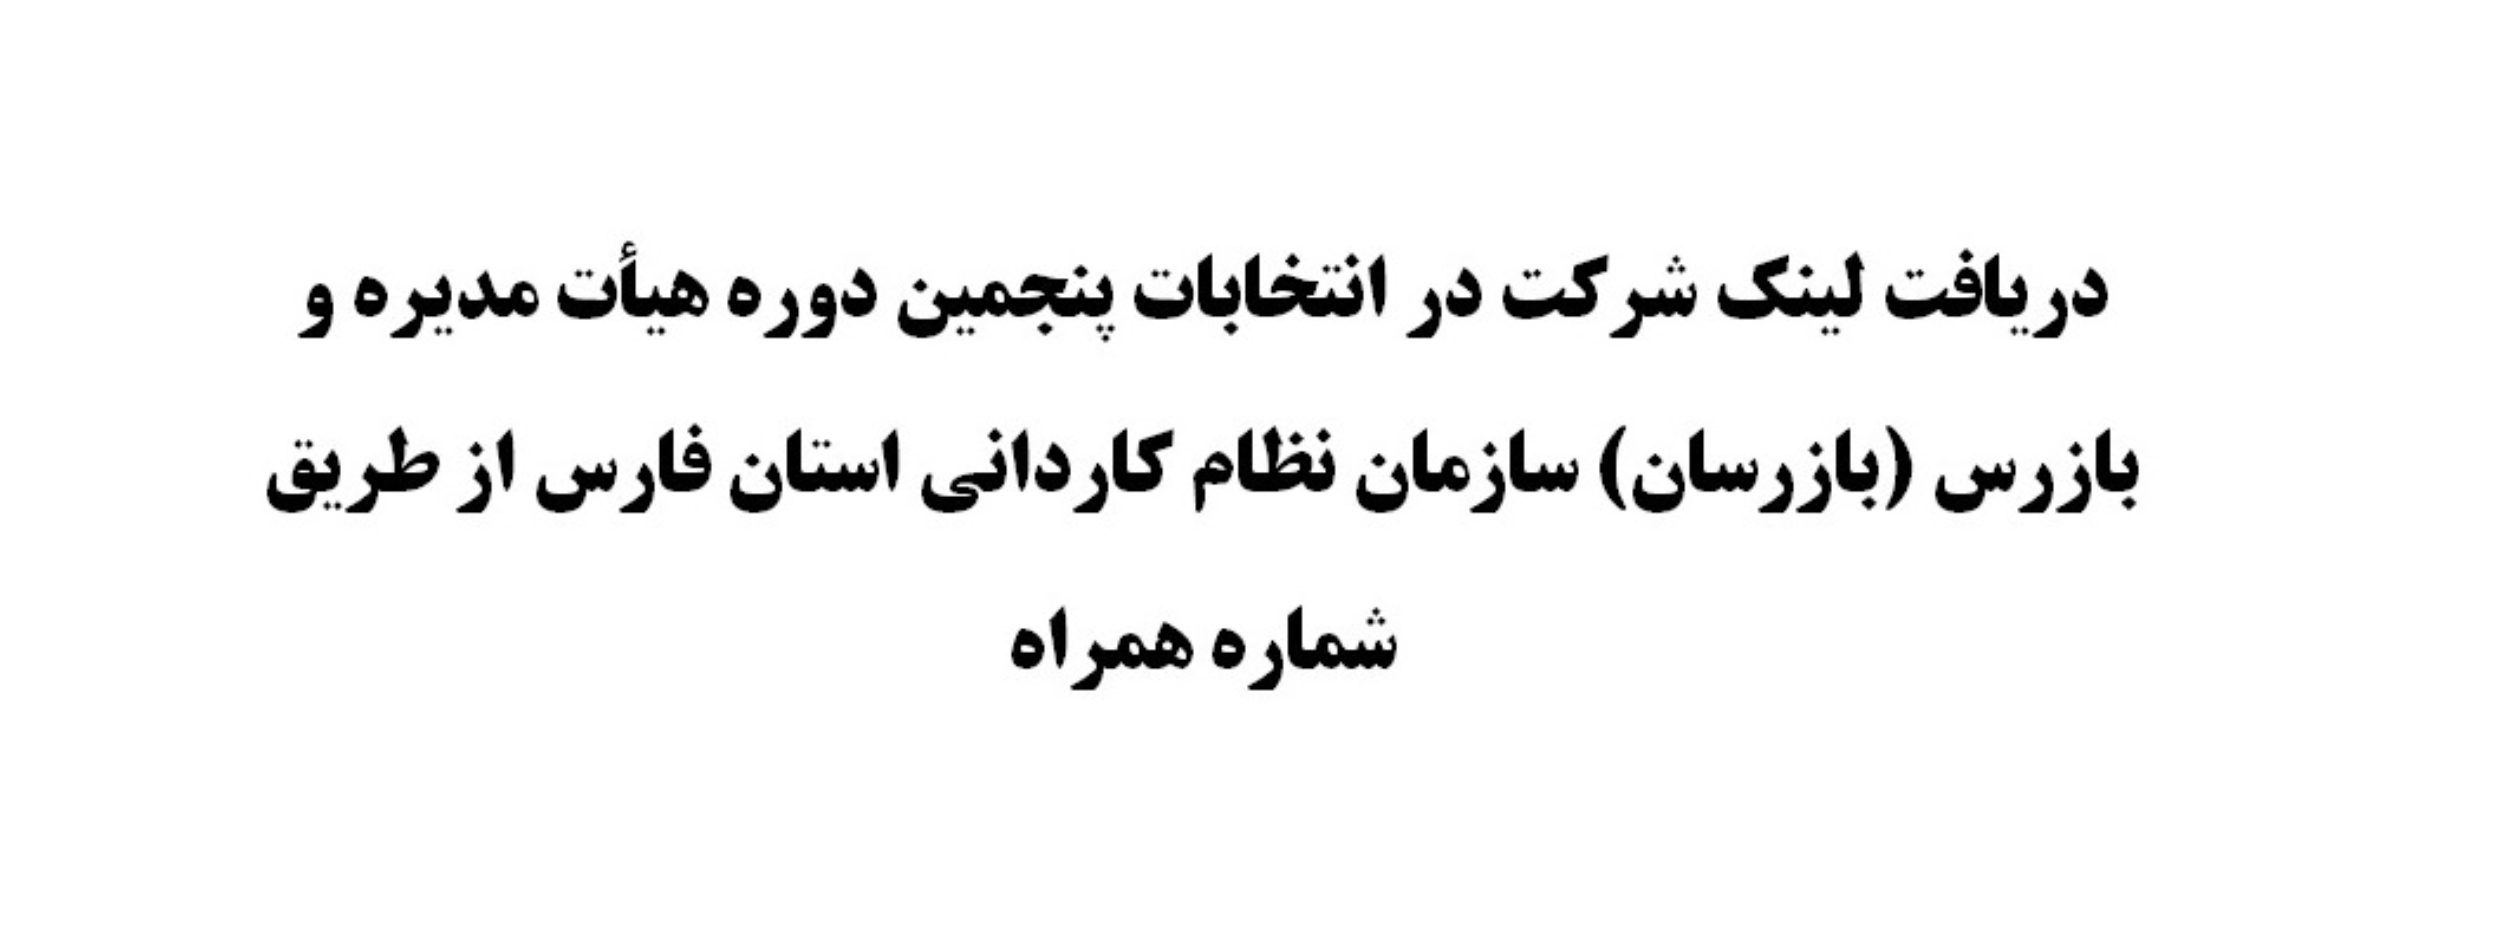 قابل توجه اعضاء محترم سازمان نظام کاردانی استان فارس